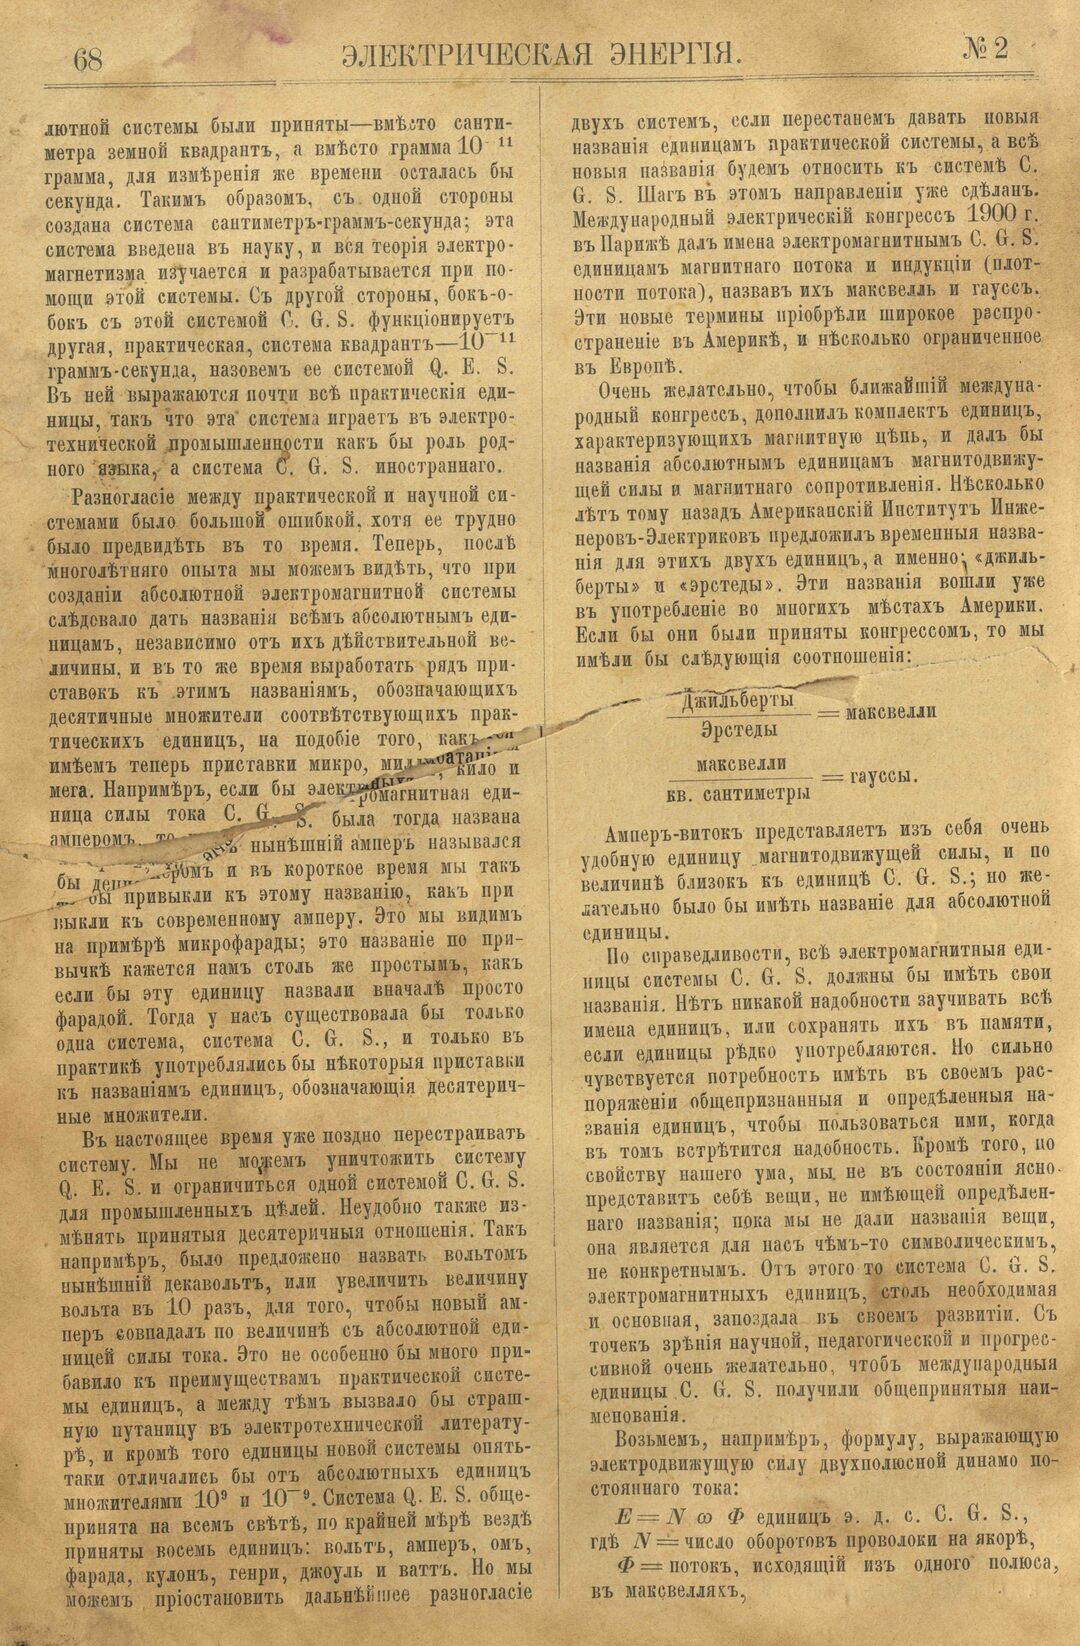 Рис. 1. Журнал Электрическая Энергiя, 2 номер, февраль, 1904 года, страница 68